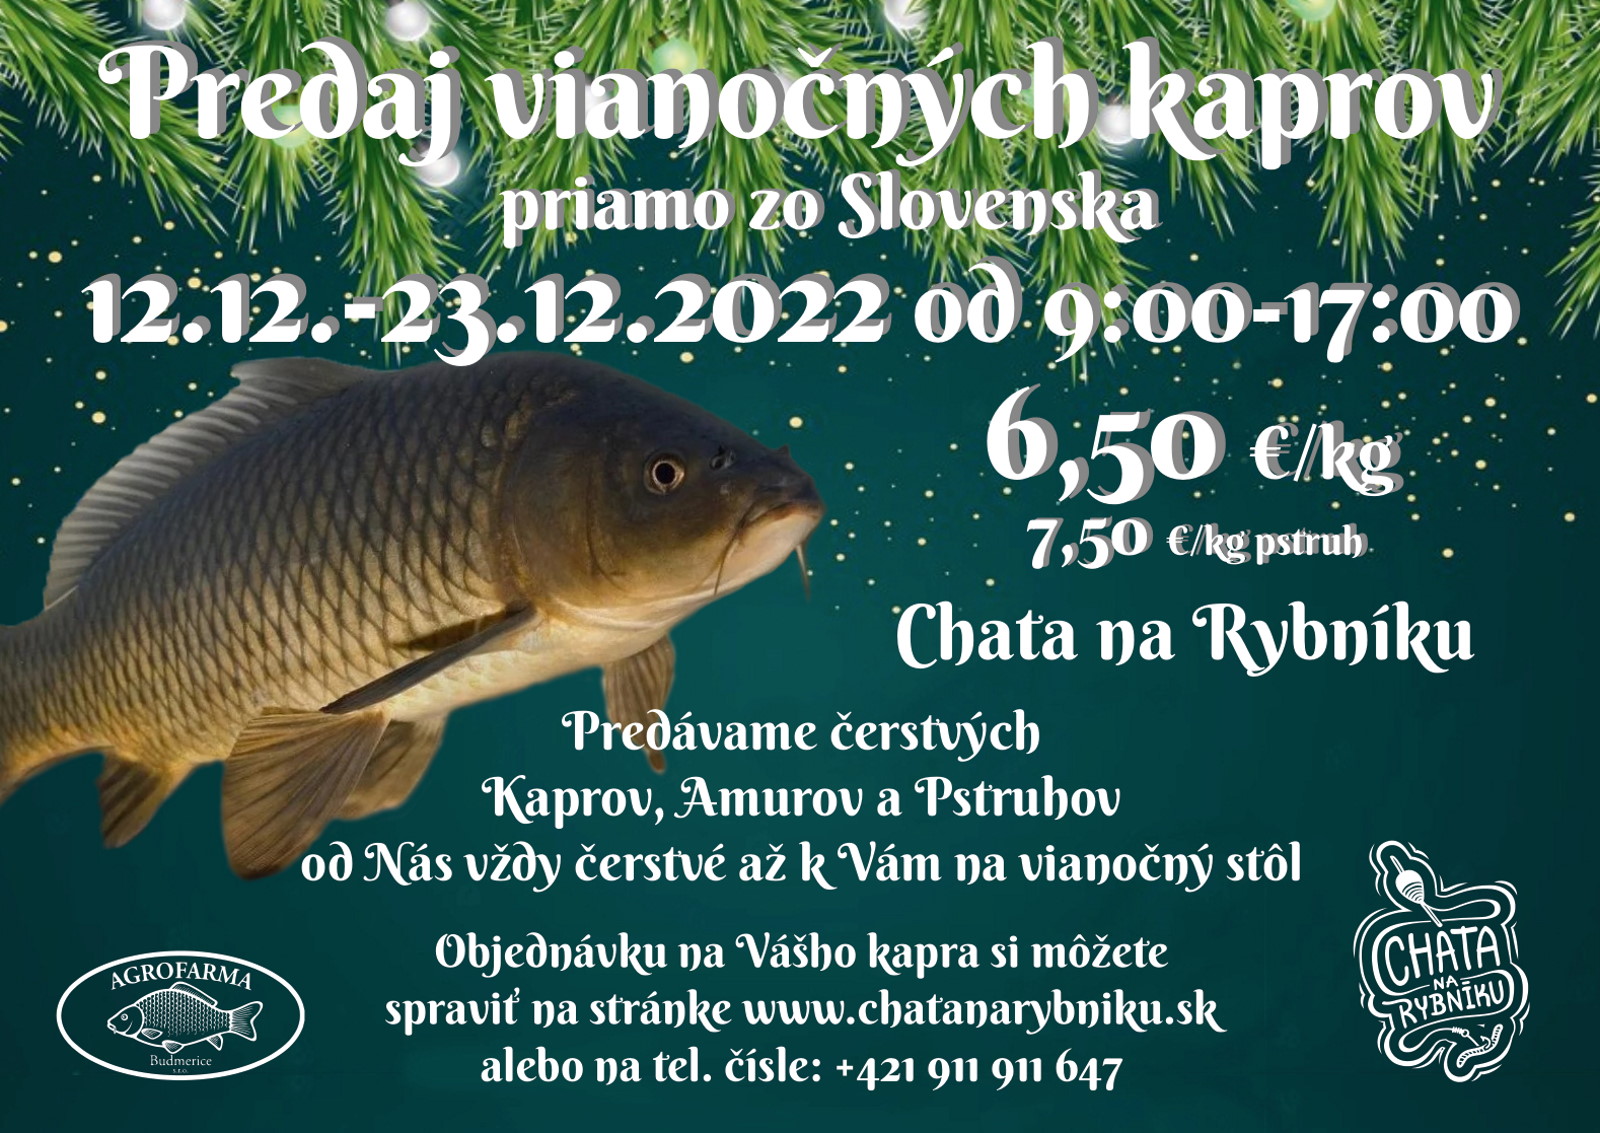 Predaj vianočných kaprov, Chata na Rybníku, 12.12.-23.12.2022 od 9:00-17:00